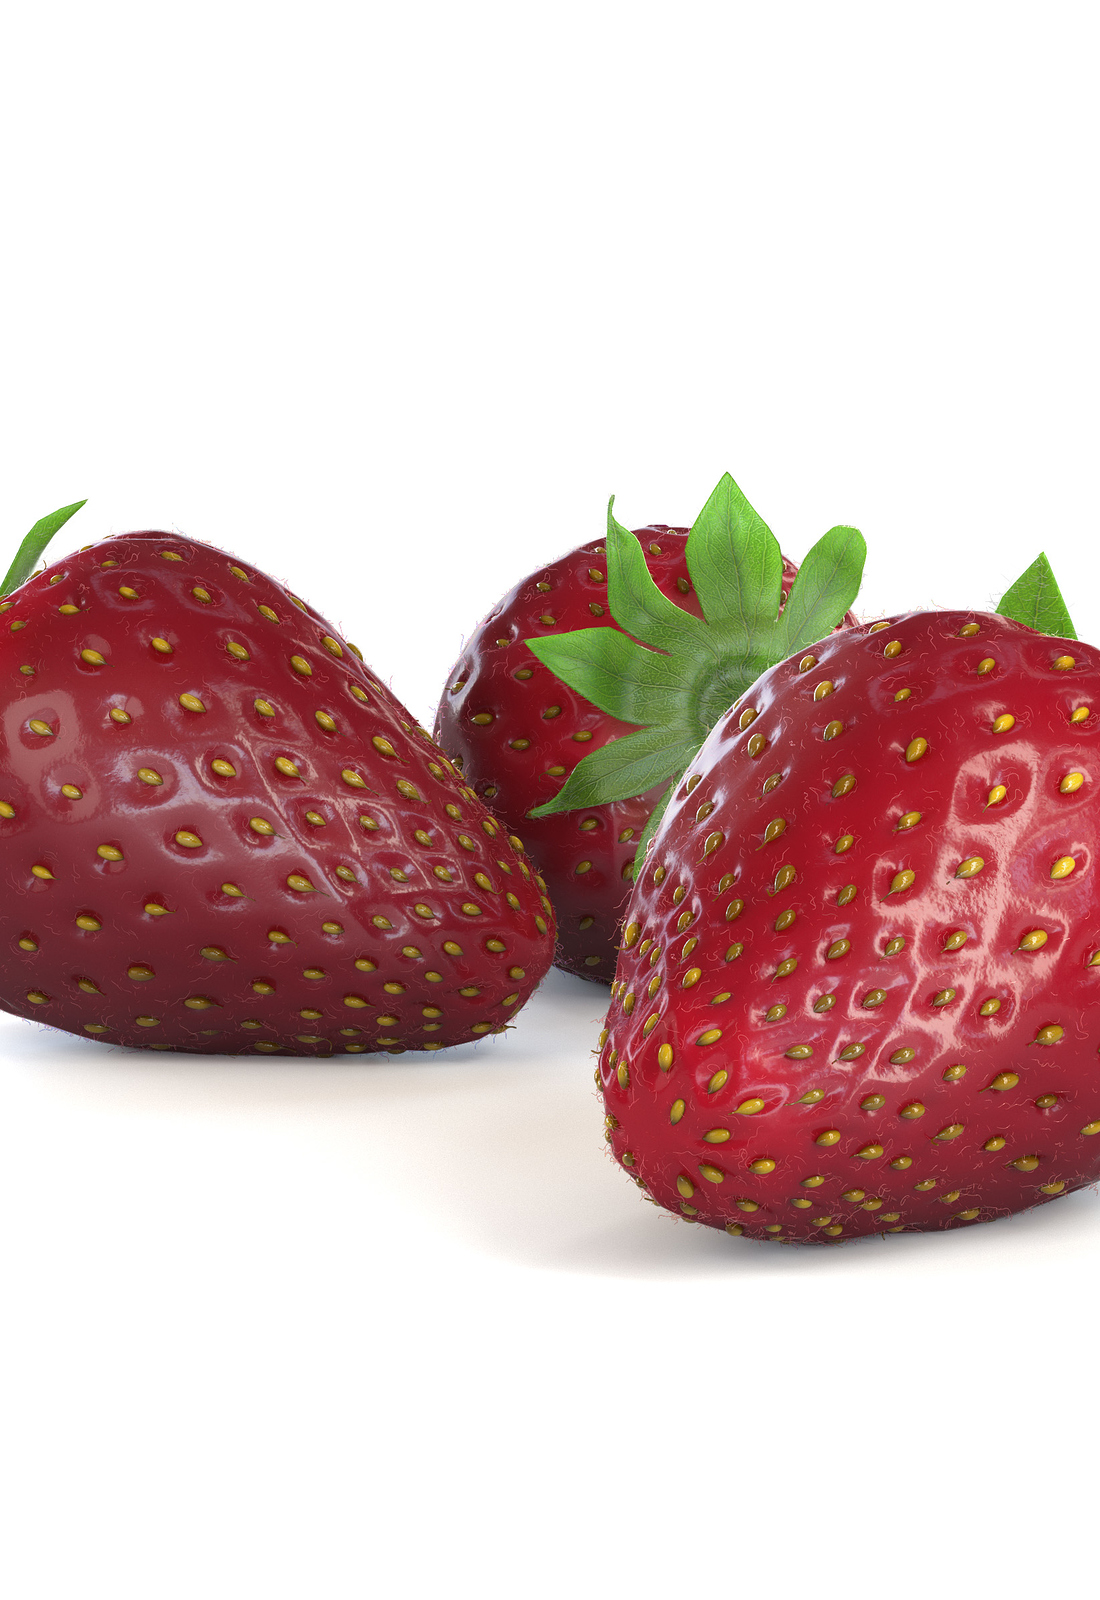 Strawberries_1.1.jpg